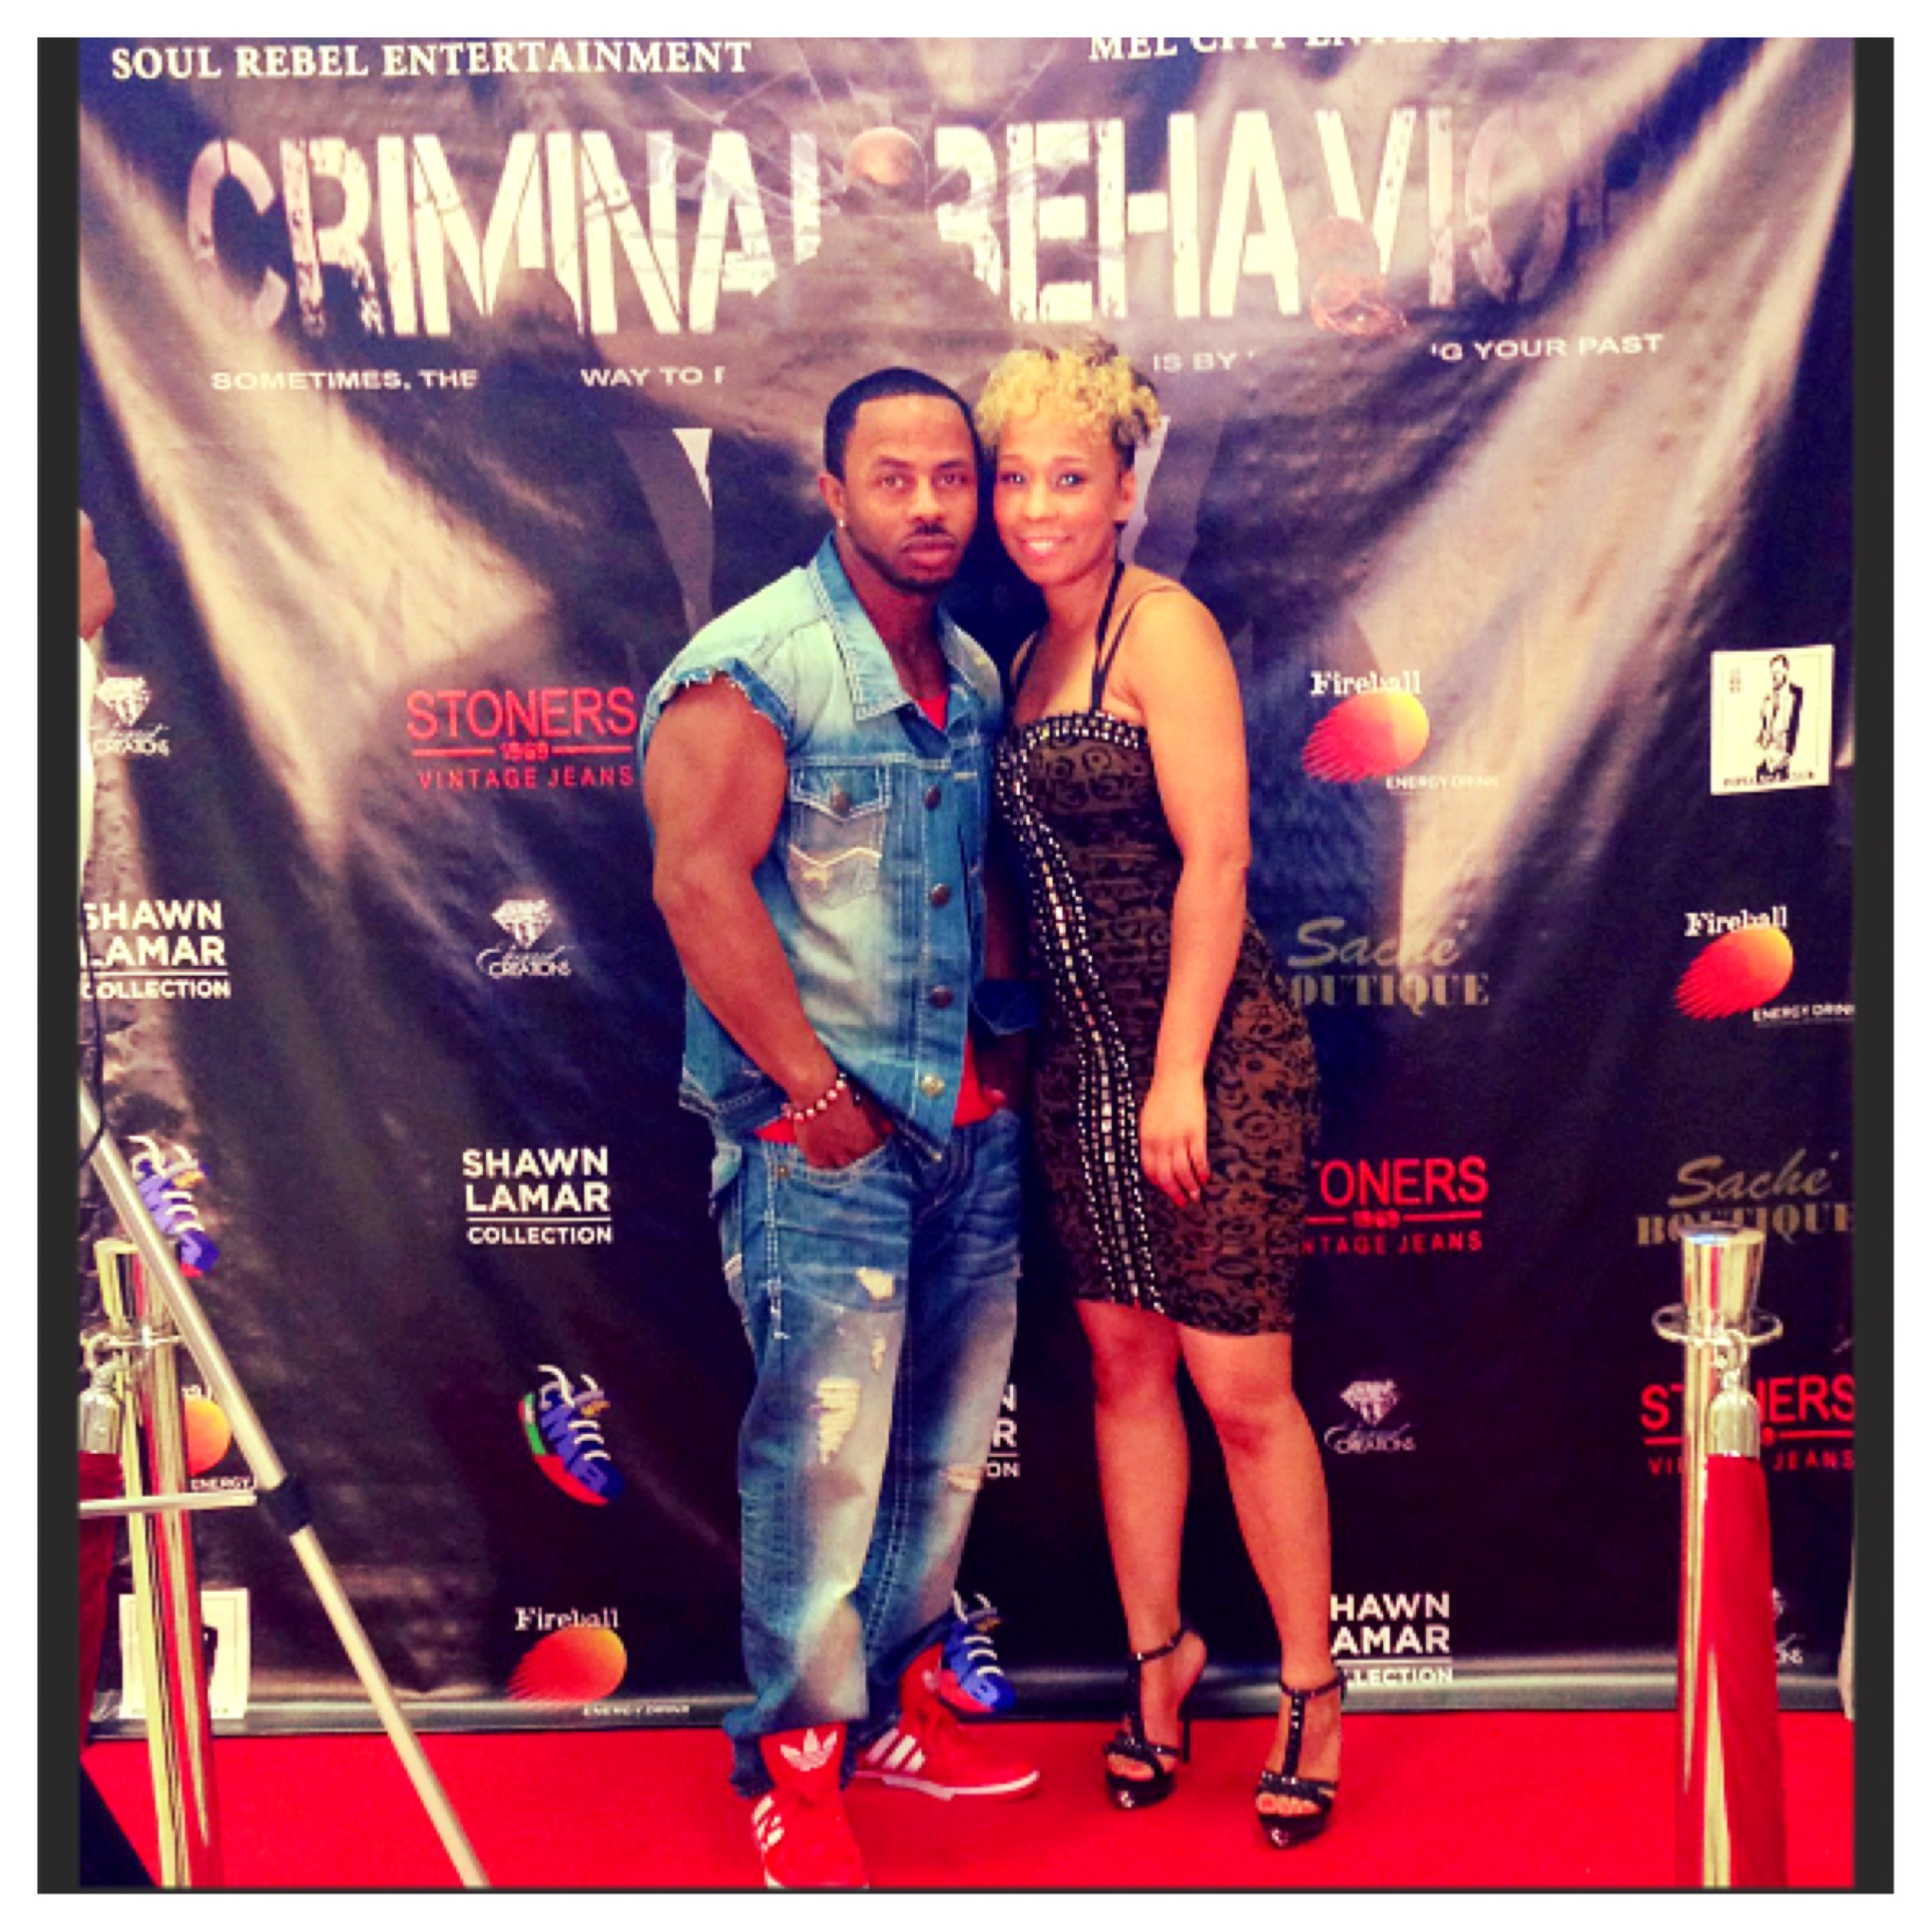 Red Carpet for Criminal Behavior Premiere.